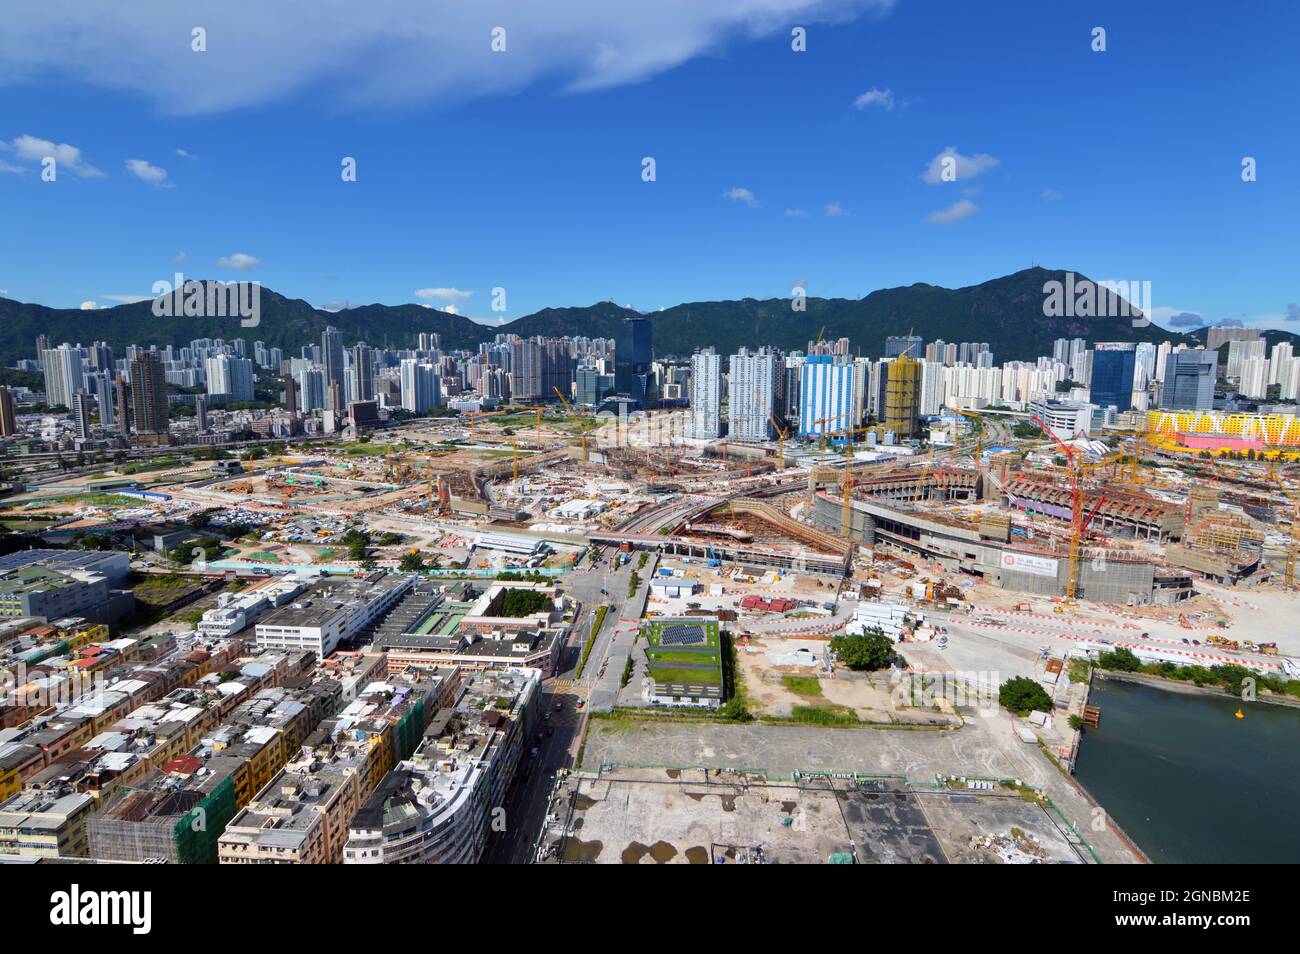 Vista del sito di costruzione dell'area di sviluppo di Kai Tak (啟德發展計劃), l'ex sito dell'aeroporto di Hong Kong Kai Tak, nel settembre 2021 Foto Stock